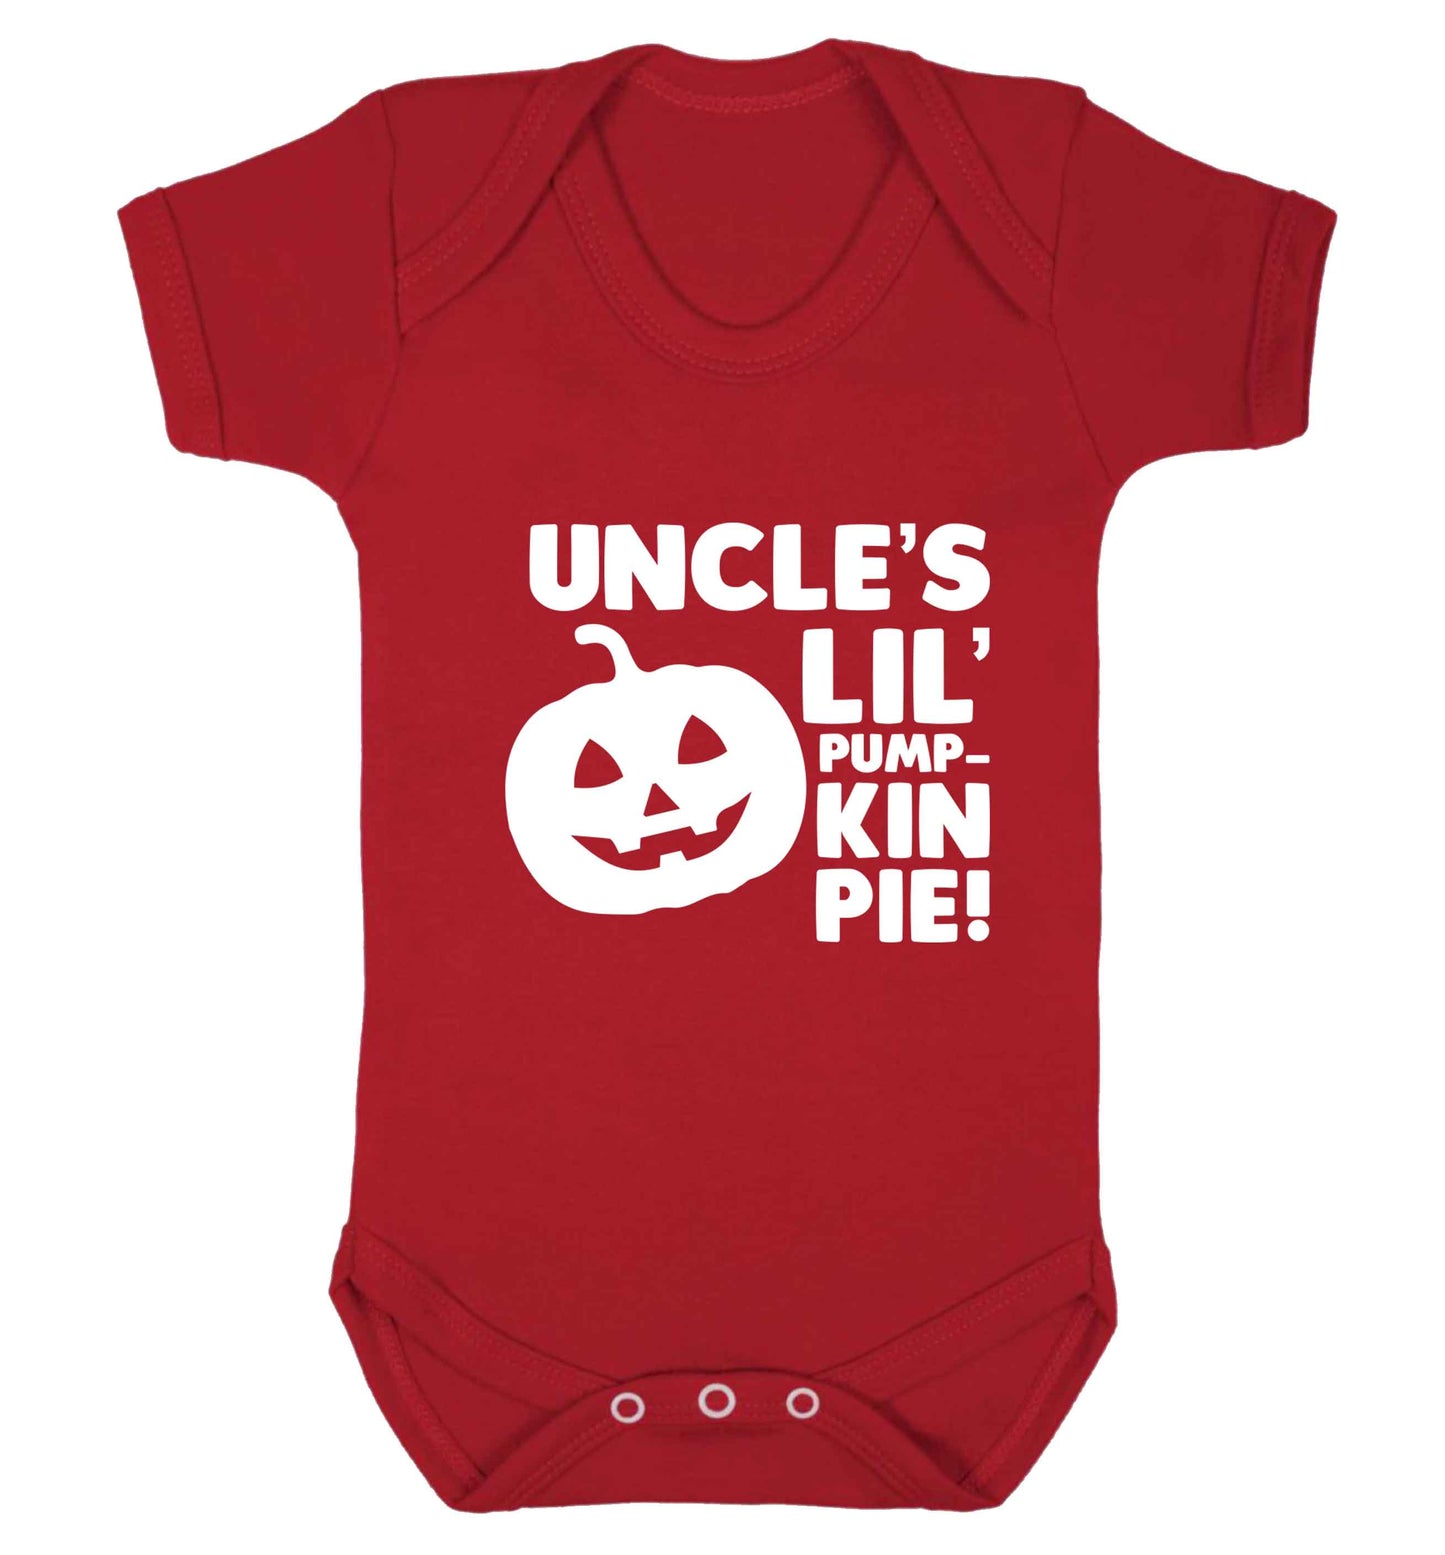 Uncle's lil' pumpkin pie baby vest red 18-24 months